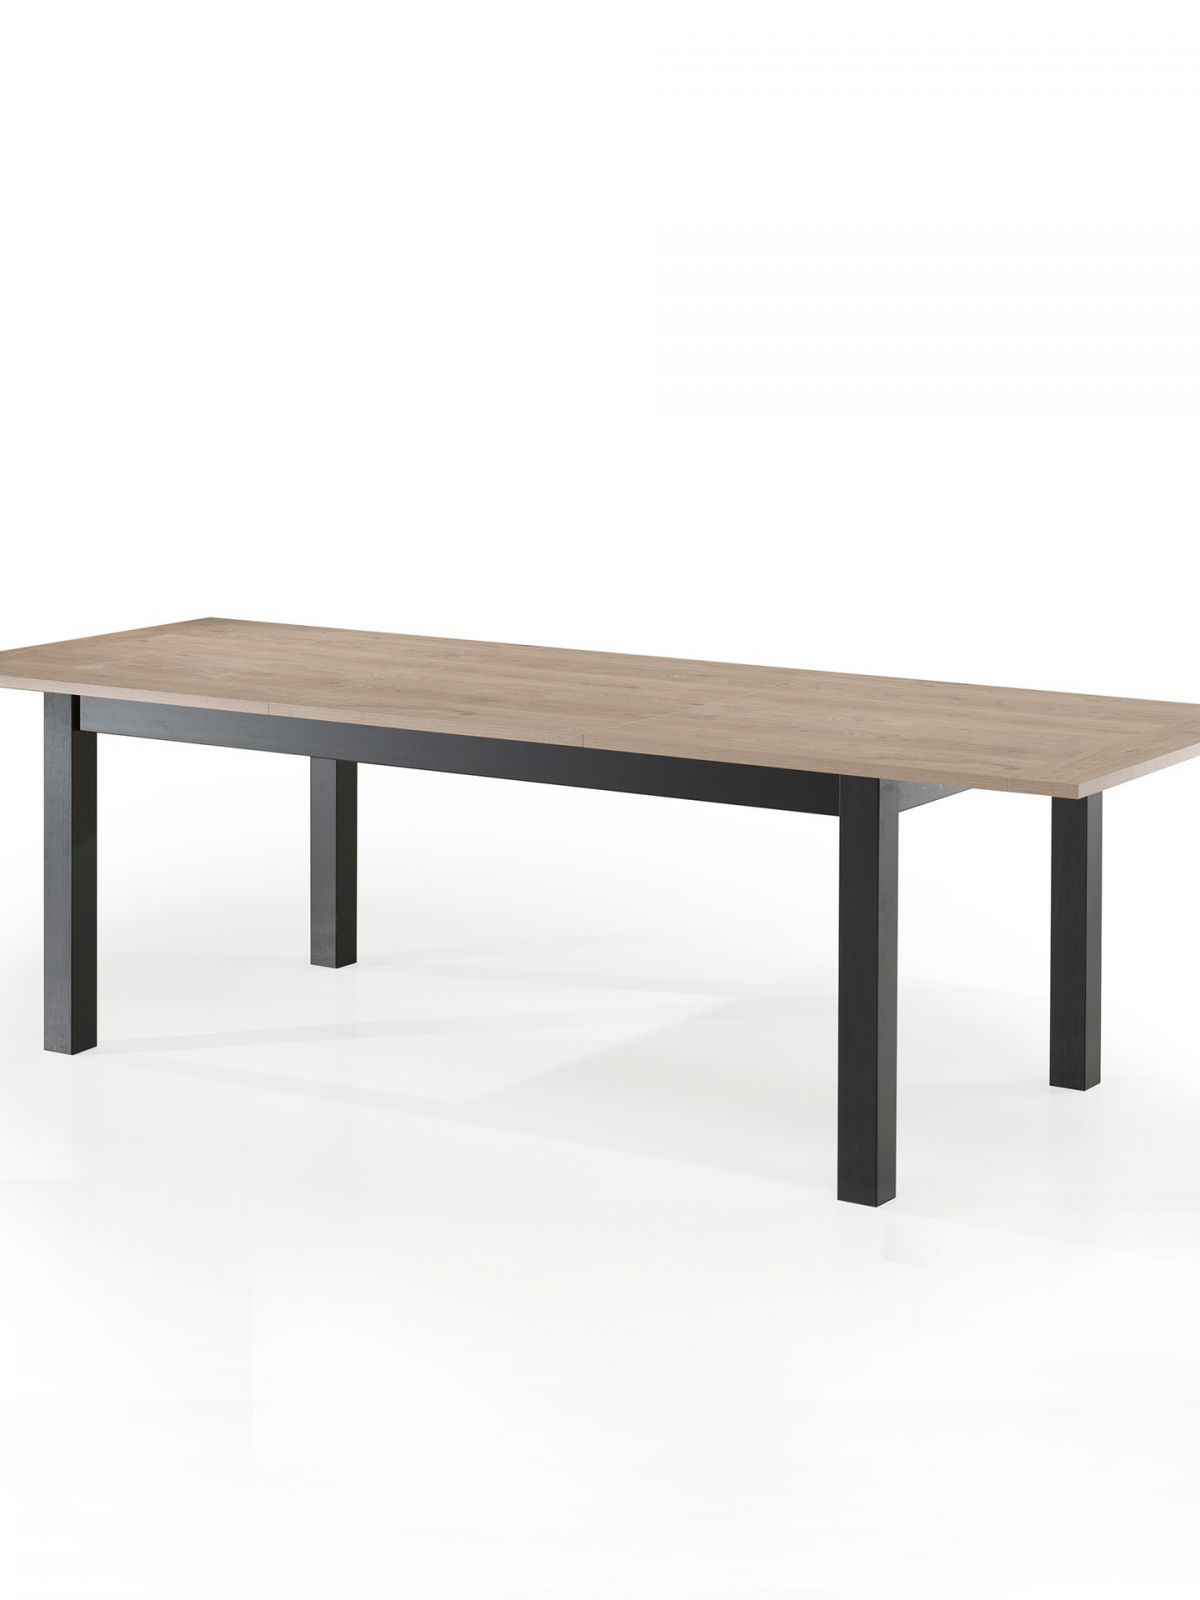 Table avec allonge rectangulaire 1,80m - 4 pieds